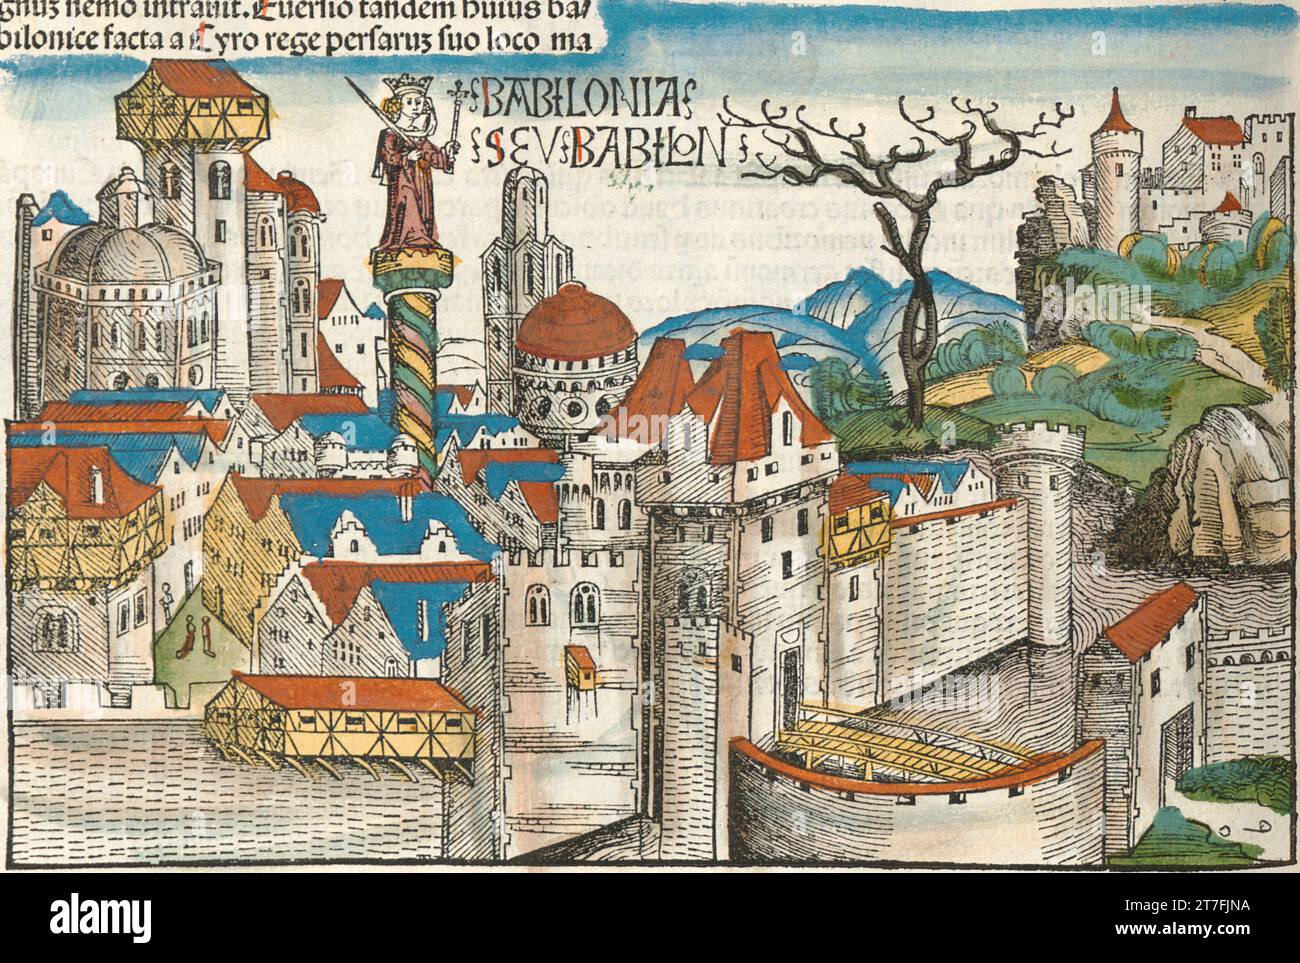 Représentation de Babylone, Mésopotamie - Illustration de la chronique de Nuremberg, 1493. Illustré par Wilhelm Pleydenwurff et Michael Wolgemut Banque D'Images